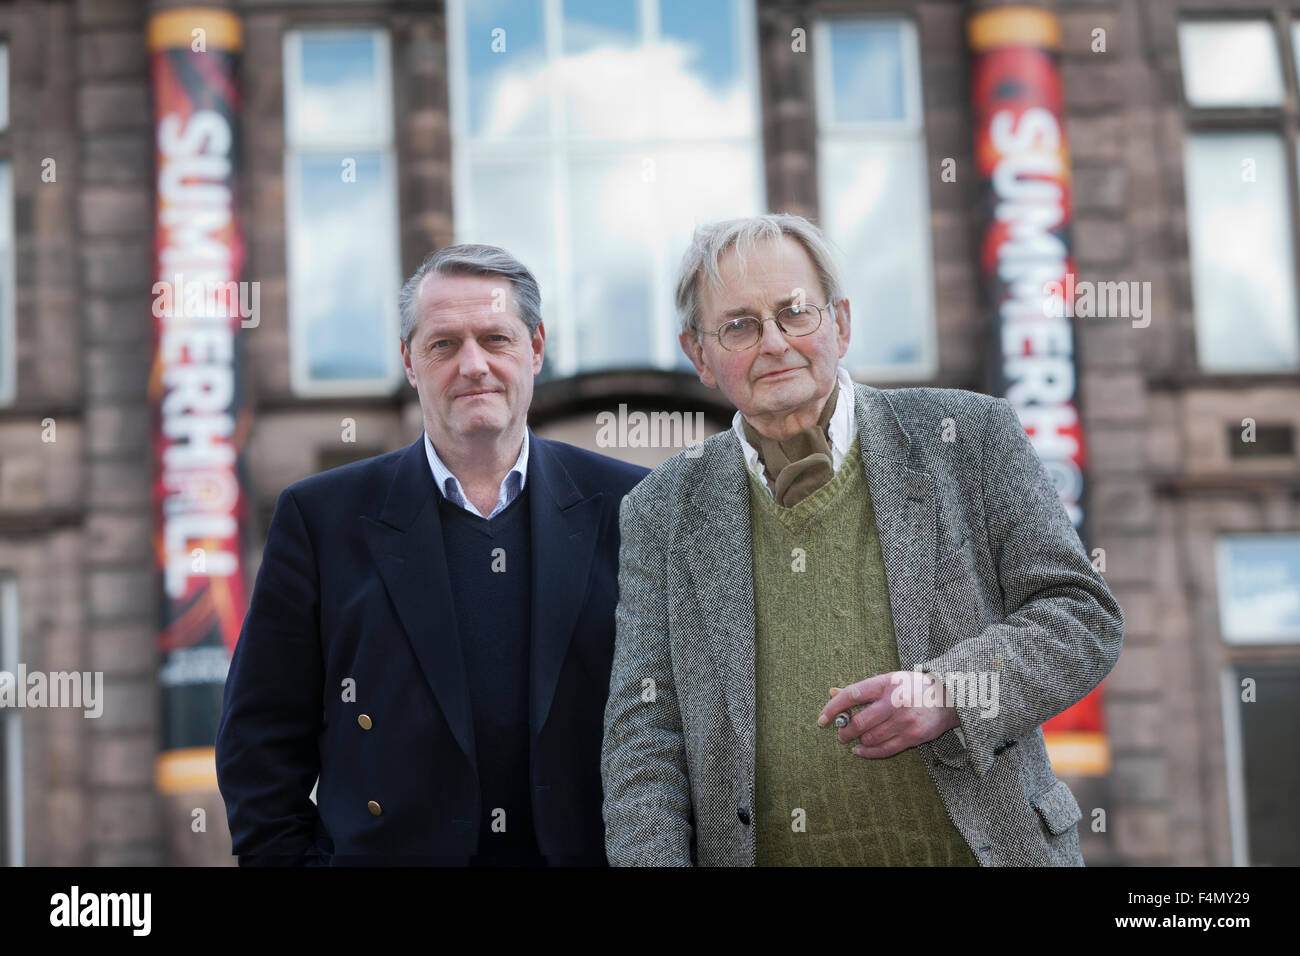 Ian Gale (à gauche) et Allan Massie, fondateurs de l'Summerhall Festival 2015 de la fiction historique. Edimbourg, Ecosse. 25 avril 2015 Banque D'Images